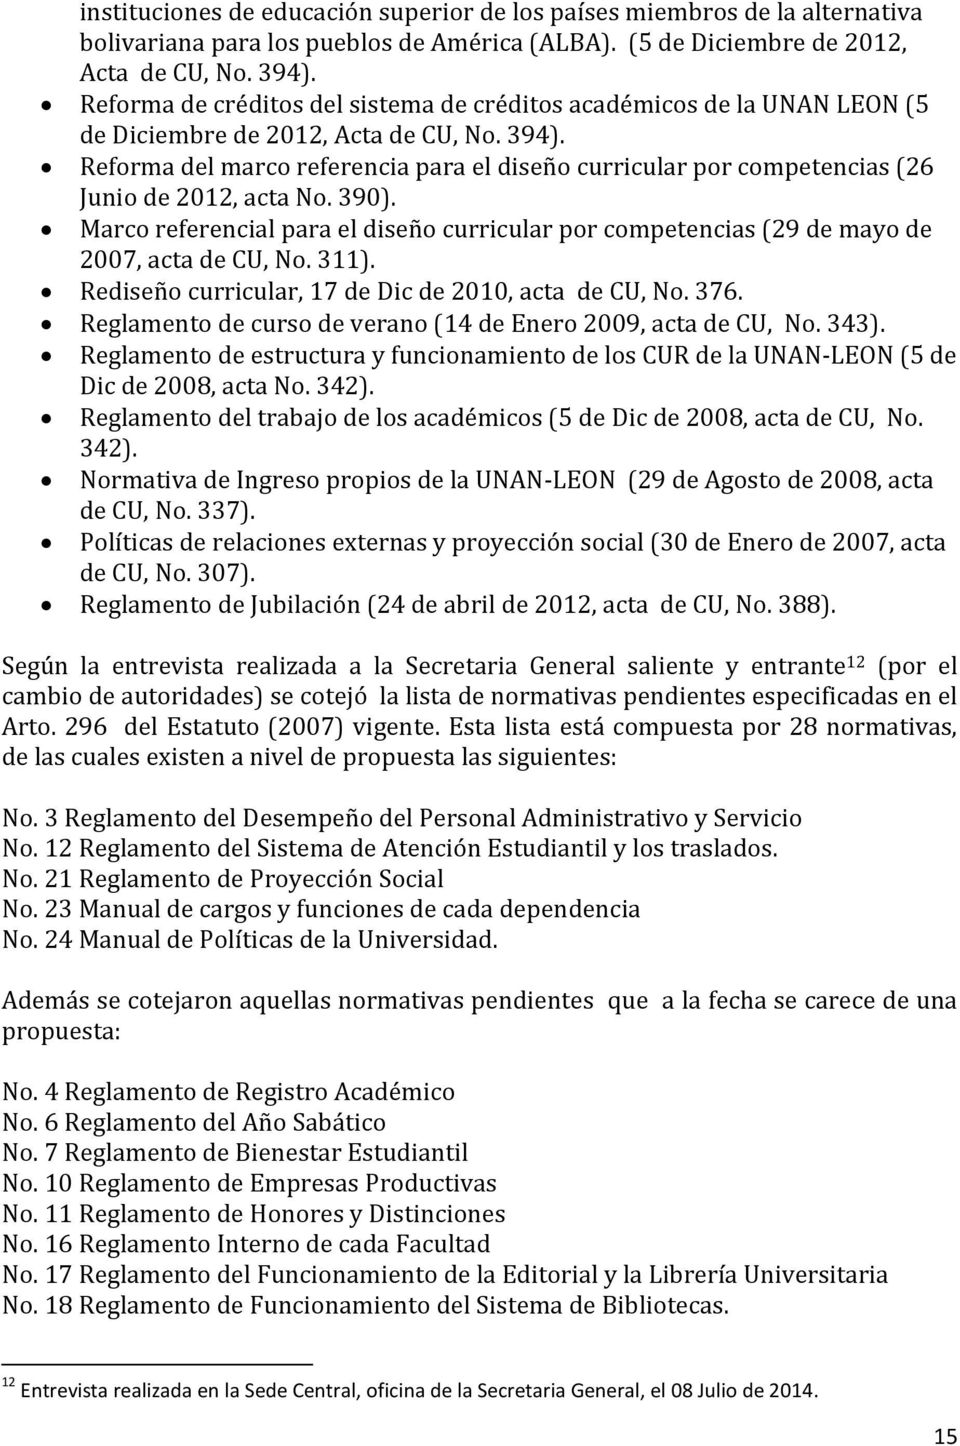 Reforma del marco referencia para el diseño curricular por competencias (26 Junio de 2012, acta No. 390).